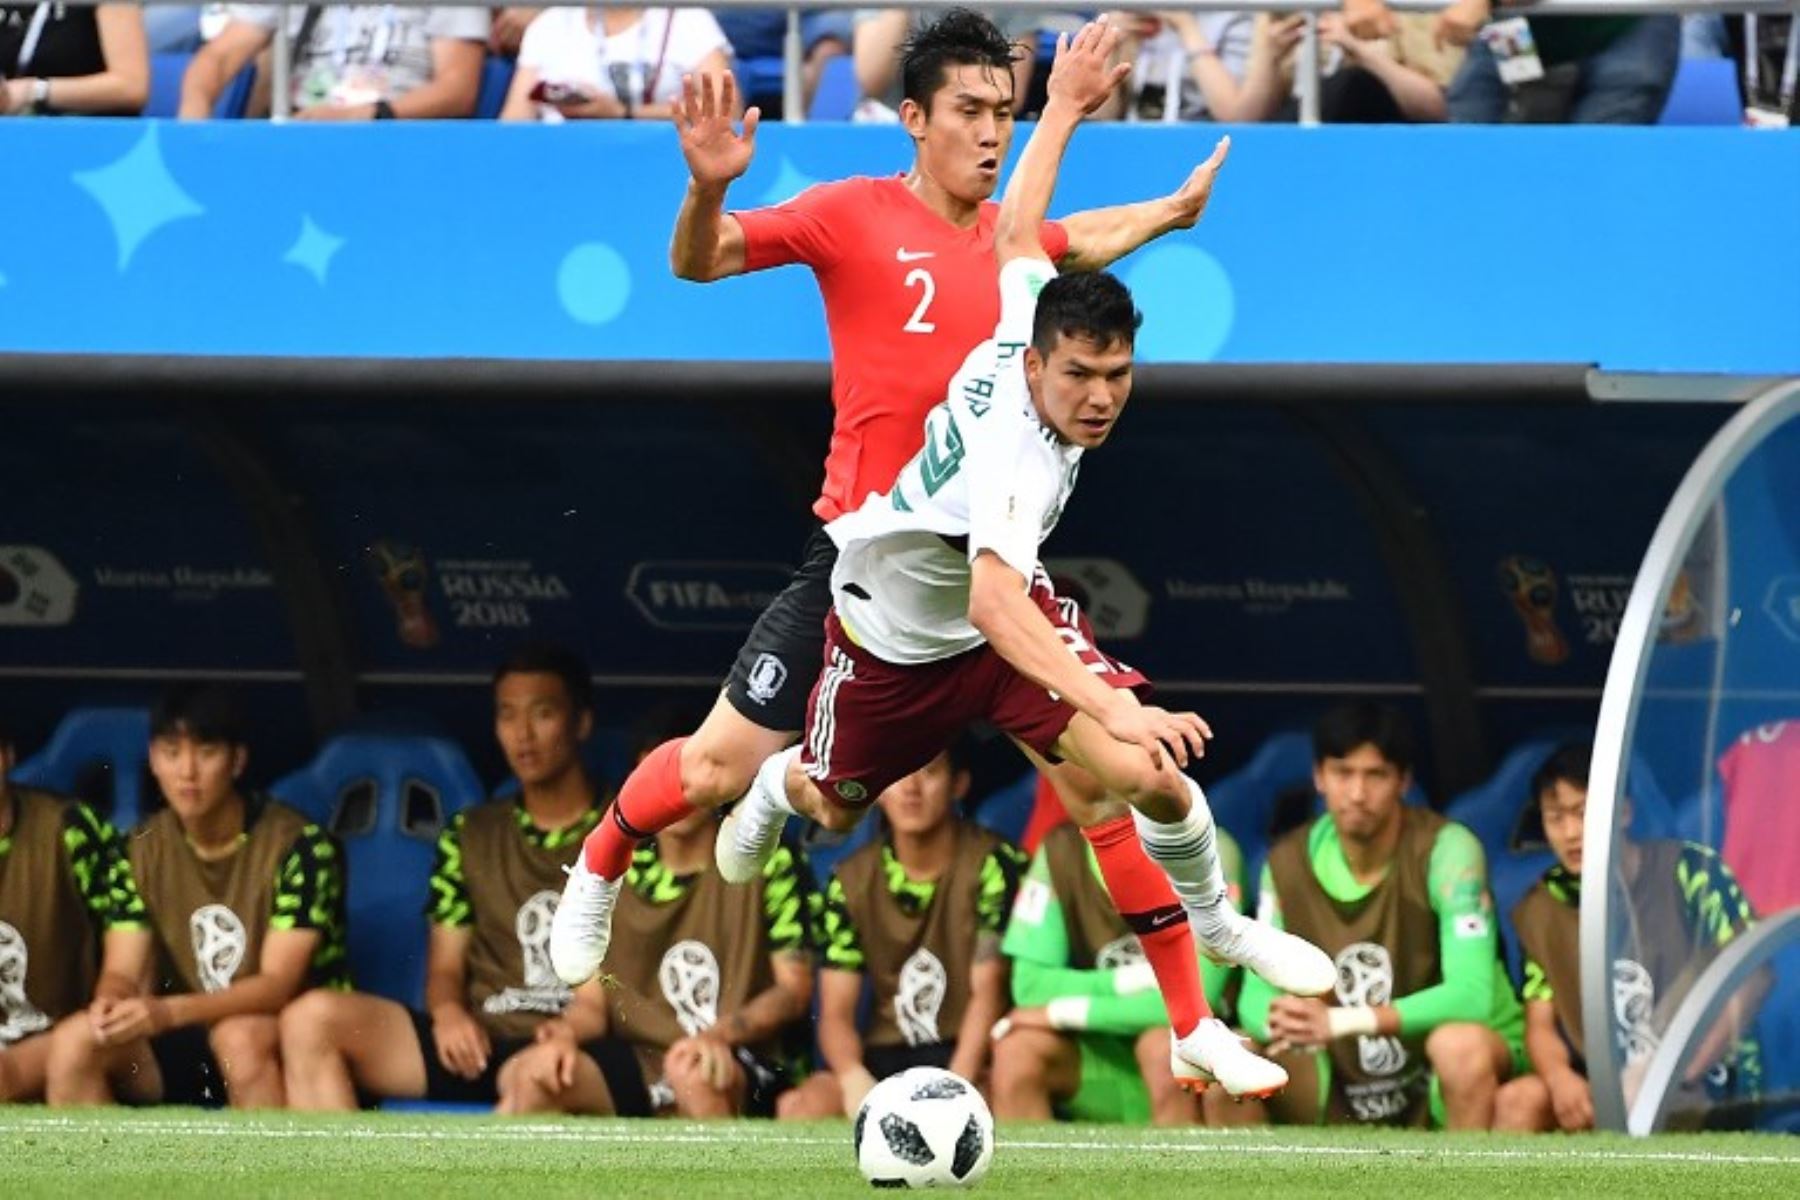 Foto: AFP
El defensor Lee Yong (L) de Corea del Sur compite con el alero mexicano Hirving Lozano durante el partido de fútbol del Grupo F de la Copa Mundial Rusia 2018 entre Corea del Sur y México